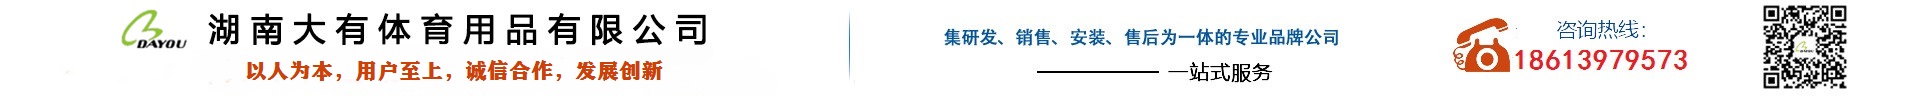 万年青湖南运营中心_Logo